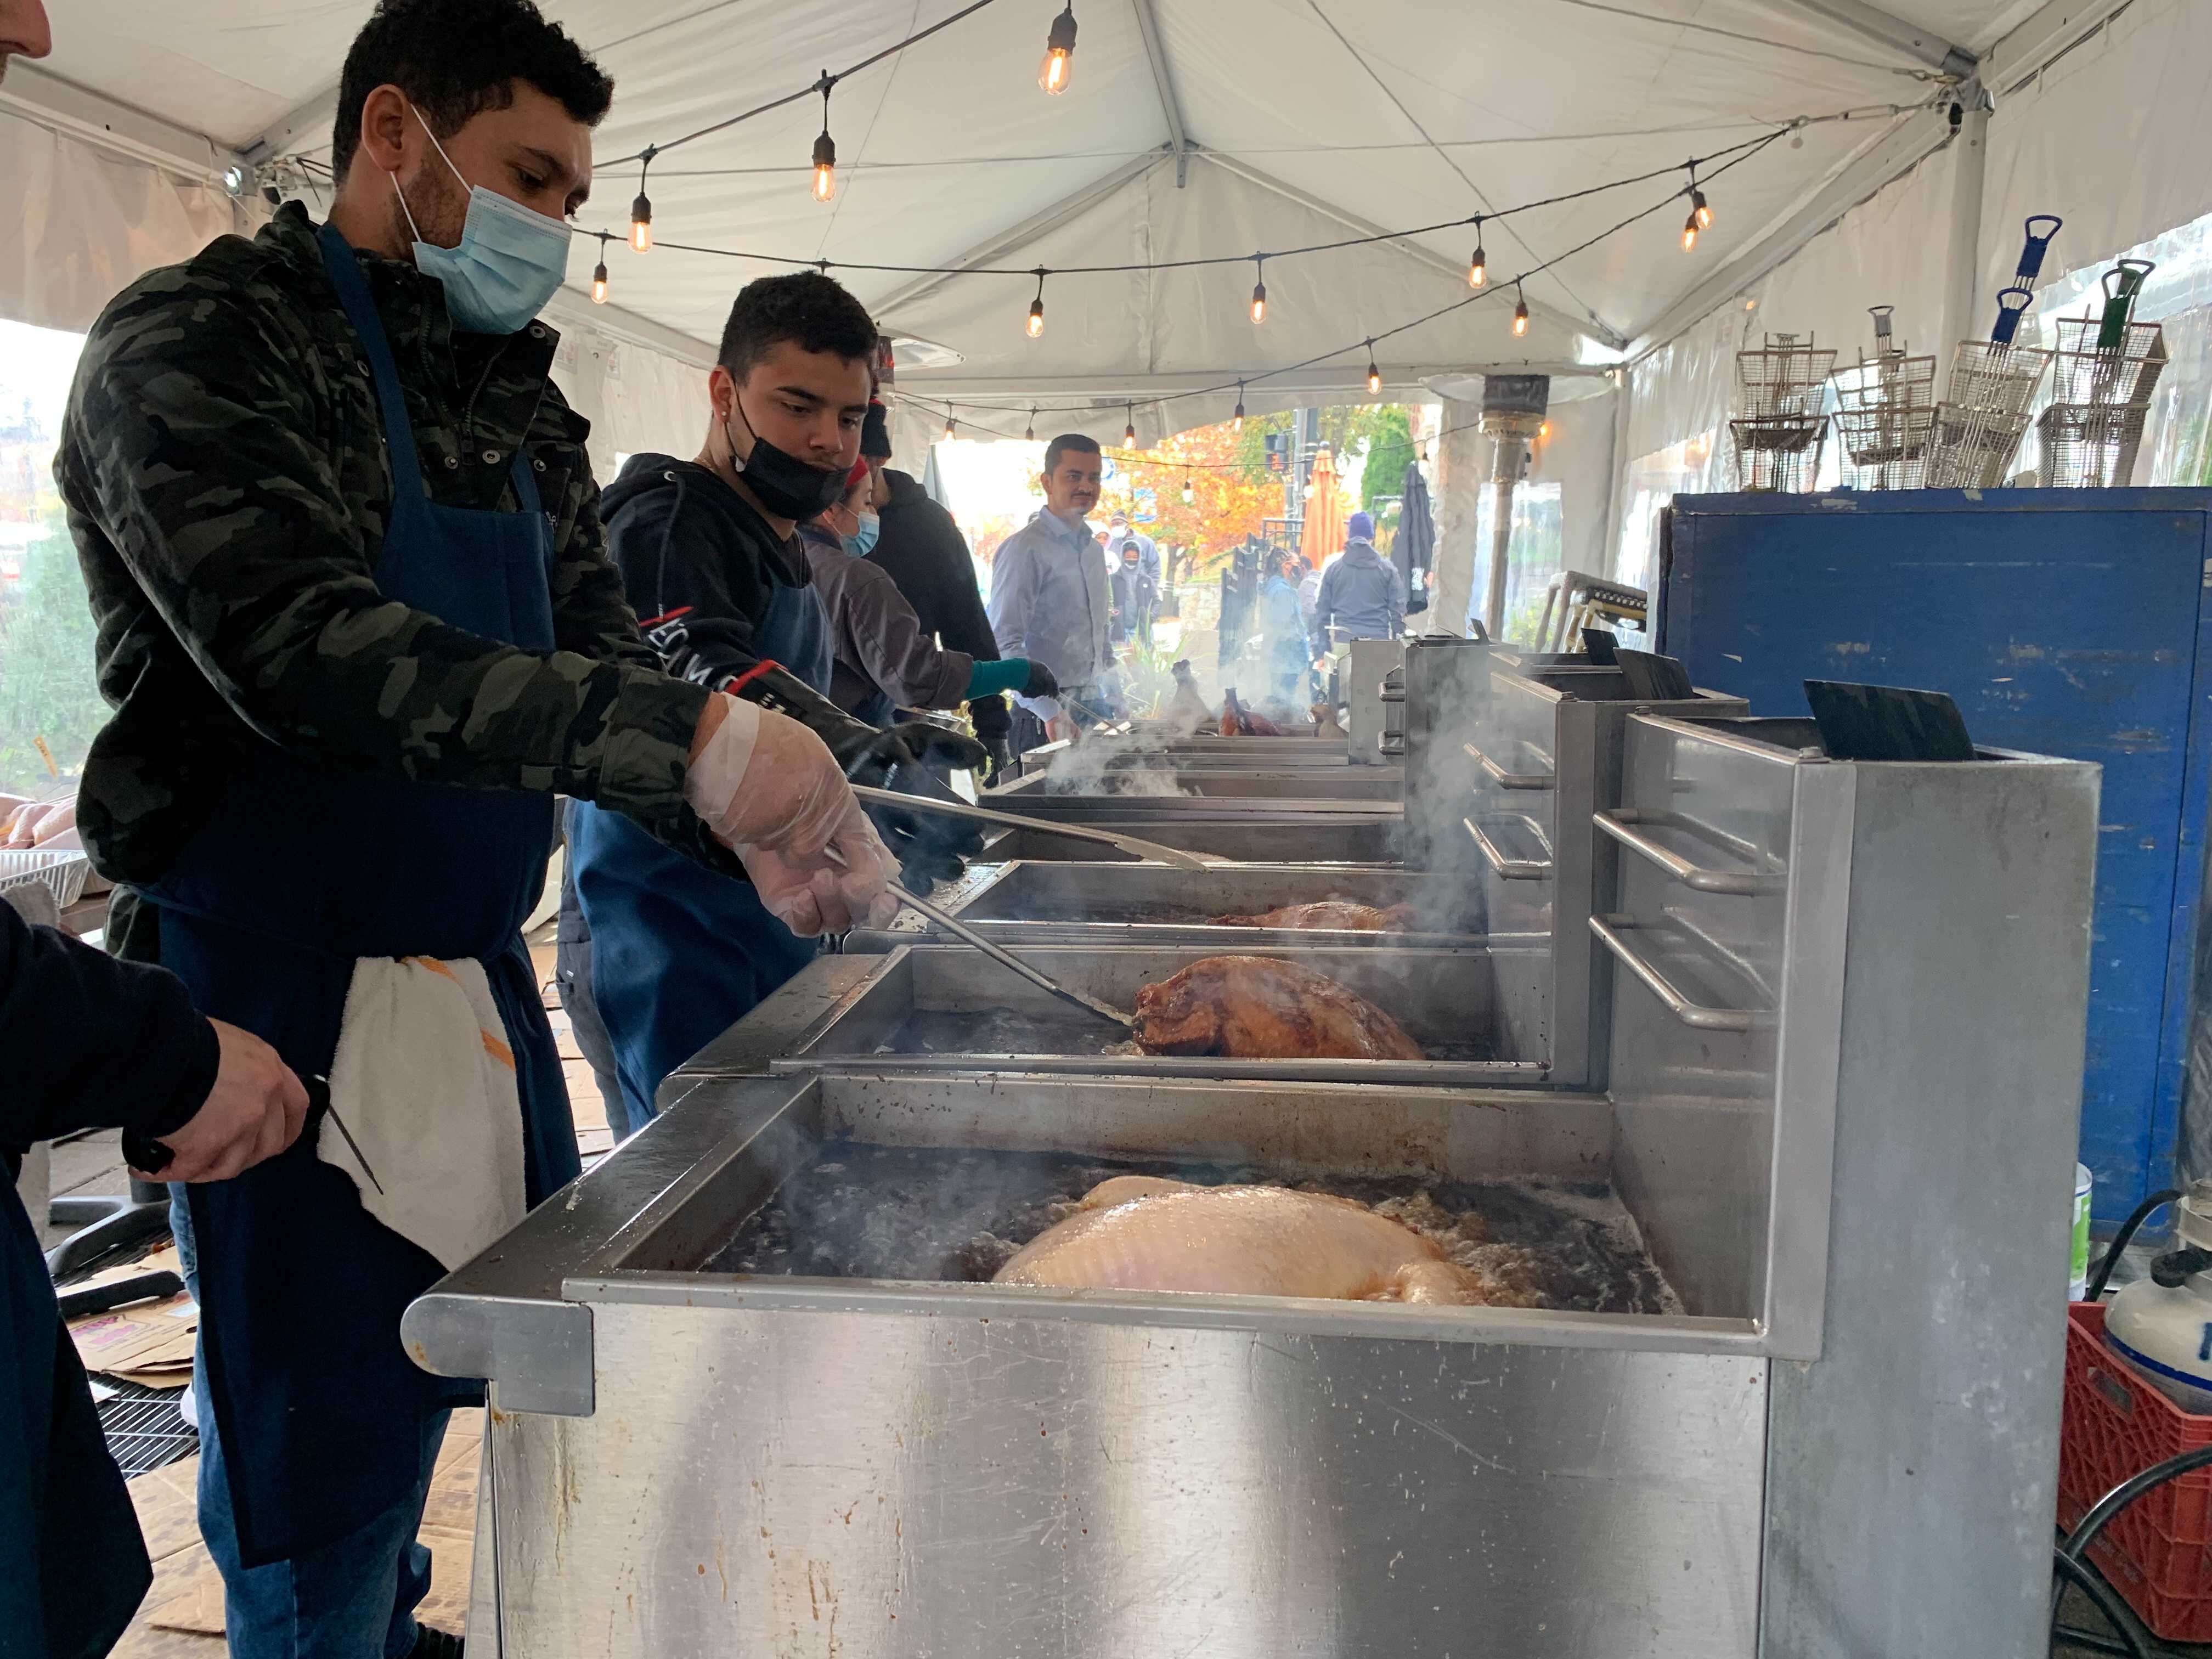 Annual Deep Frying of Turkeys in DC